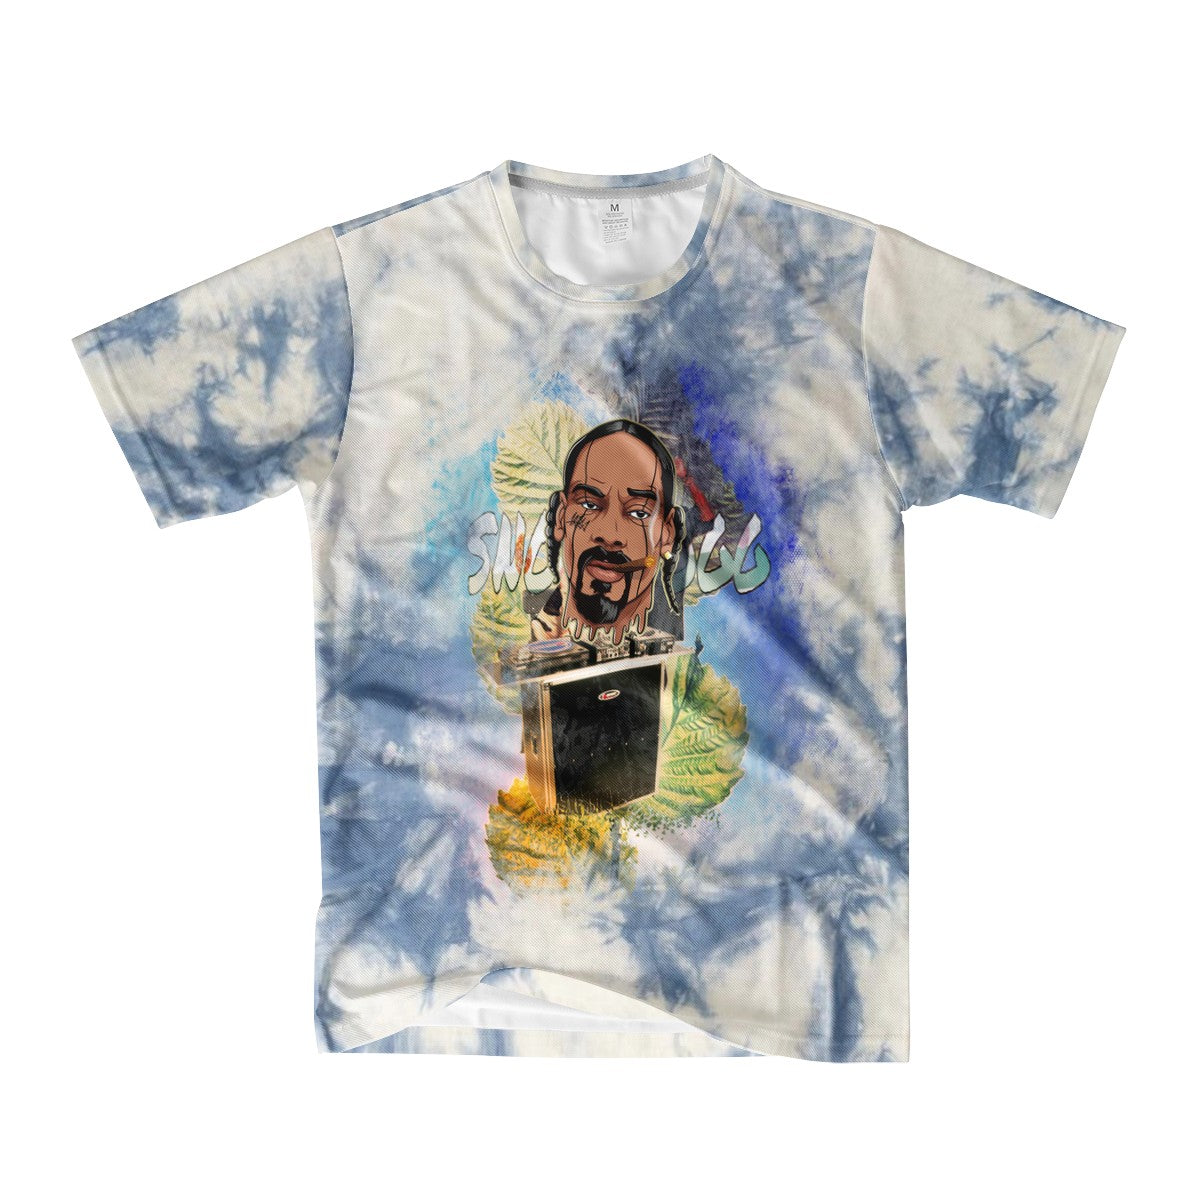 Snoop Dogg Custom Tee Shirt